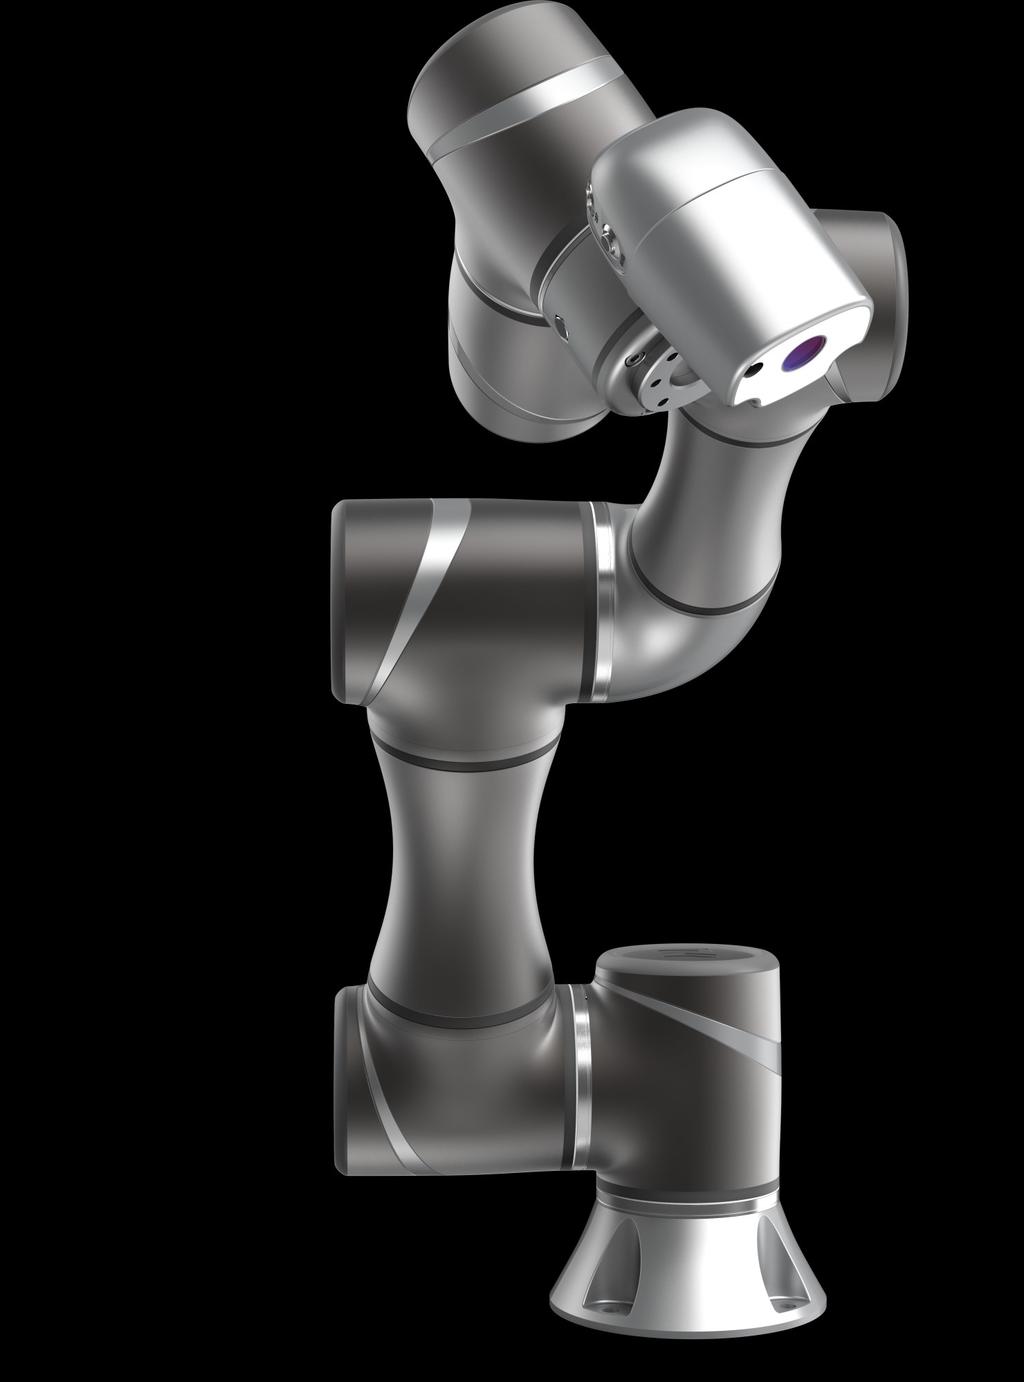 Der TM5 kollaborierender Roboter bietet einfachste Programmierung, ein innovatives voll integriertes Kamera-System mit den neusten Sicherheits-Funktionen für sich ständig ändernde Anforderungen.